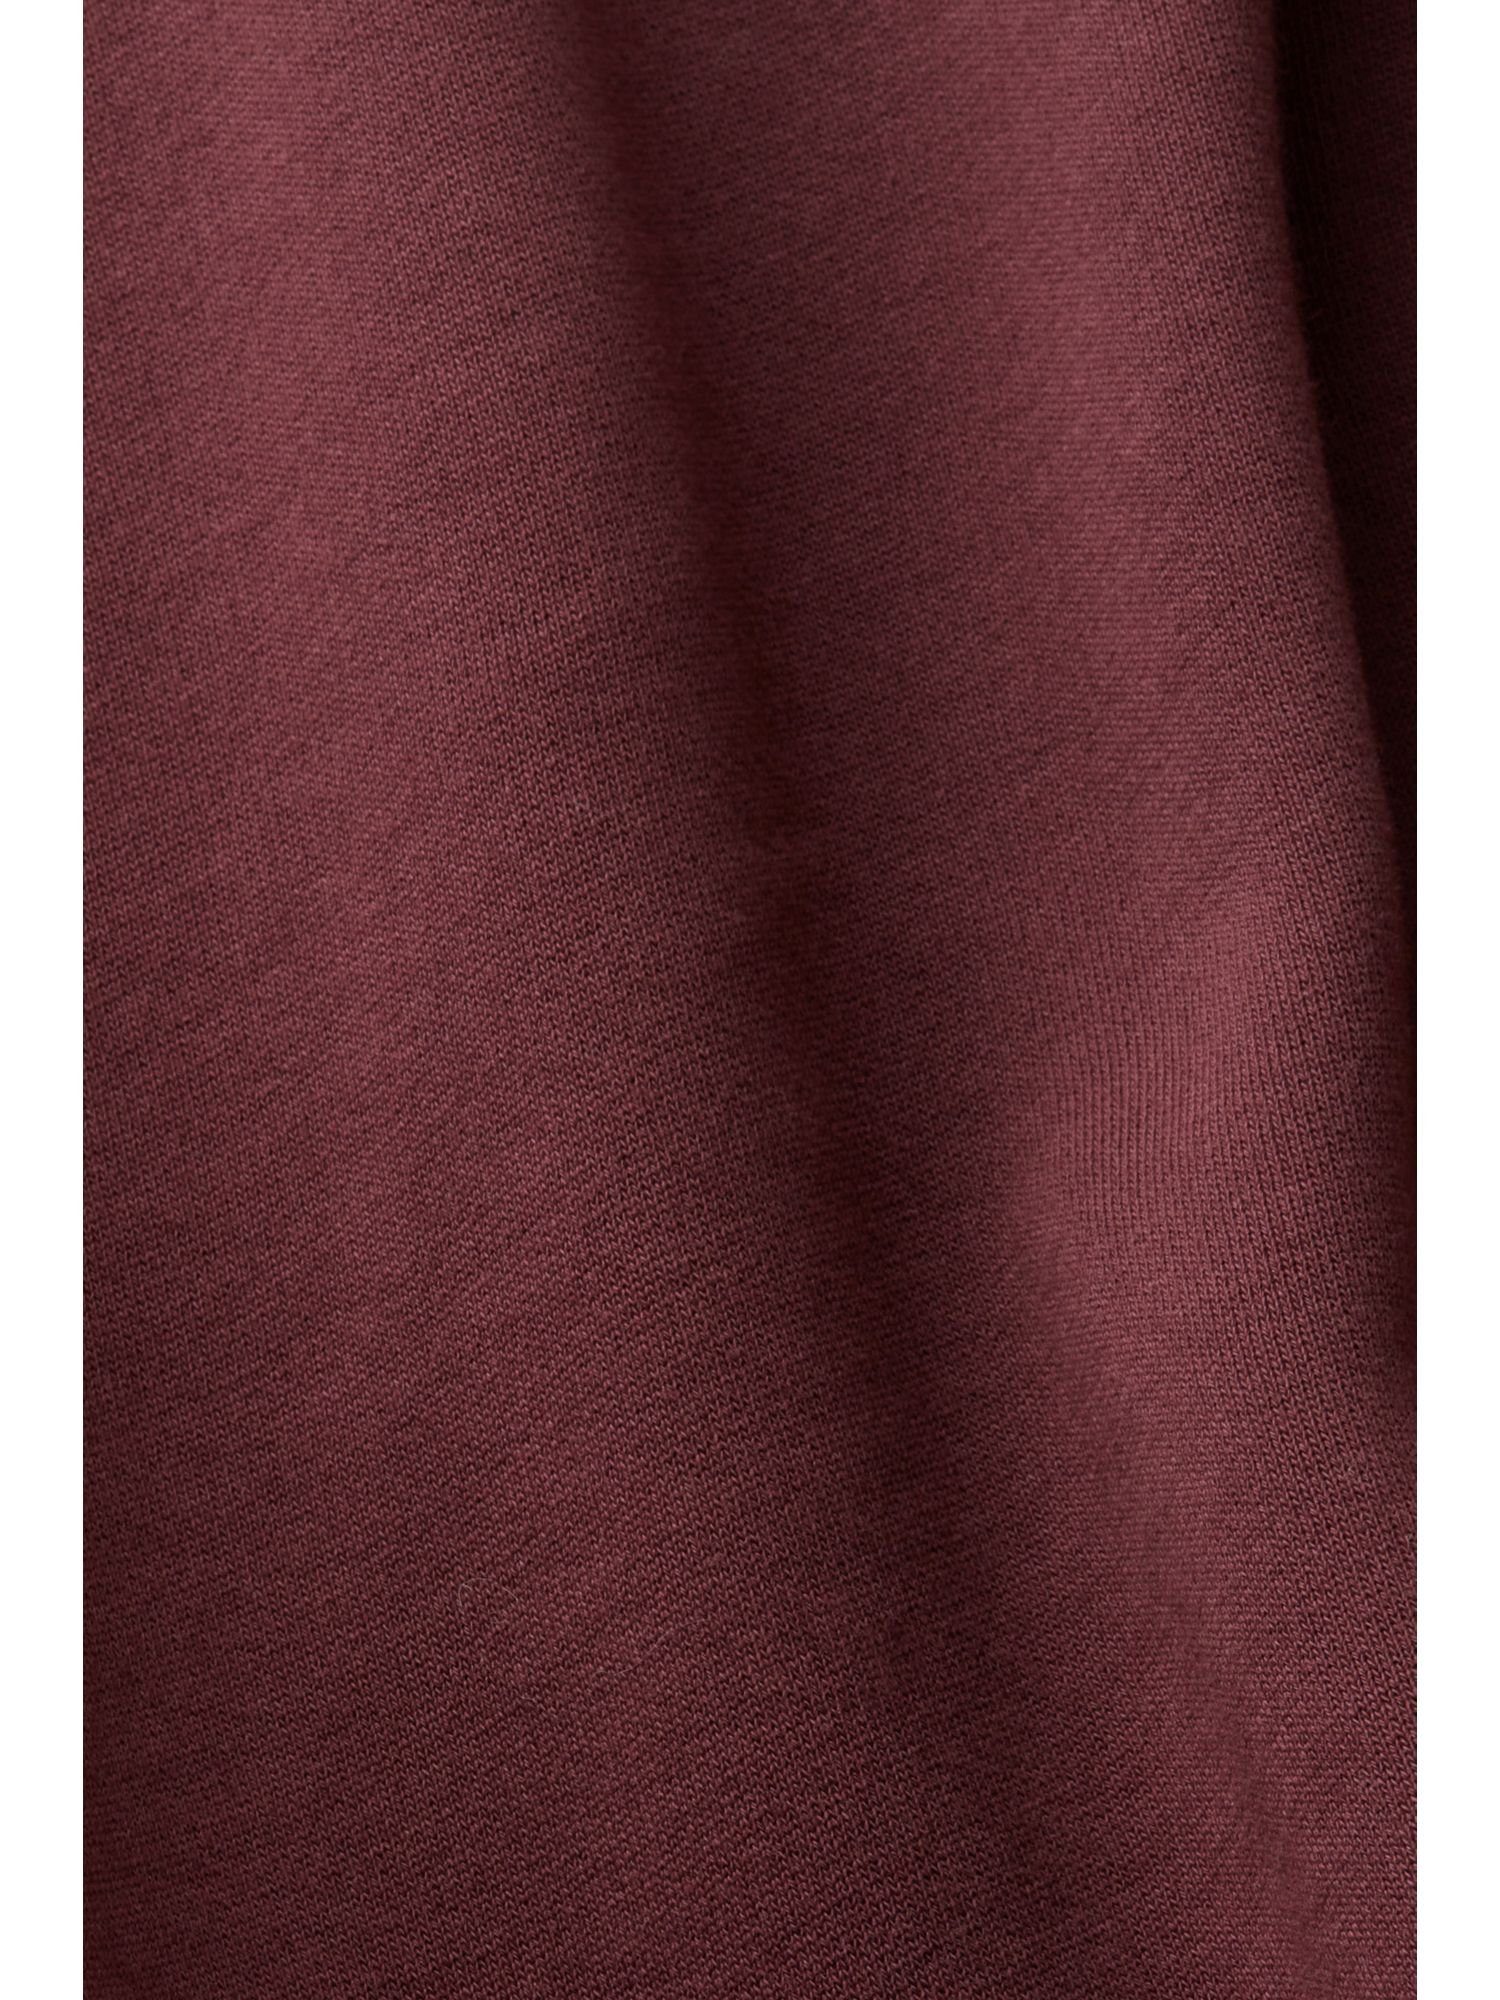 Langes RED Hoodie-Kleid Midikleid BORDEAUX Esprit